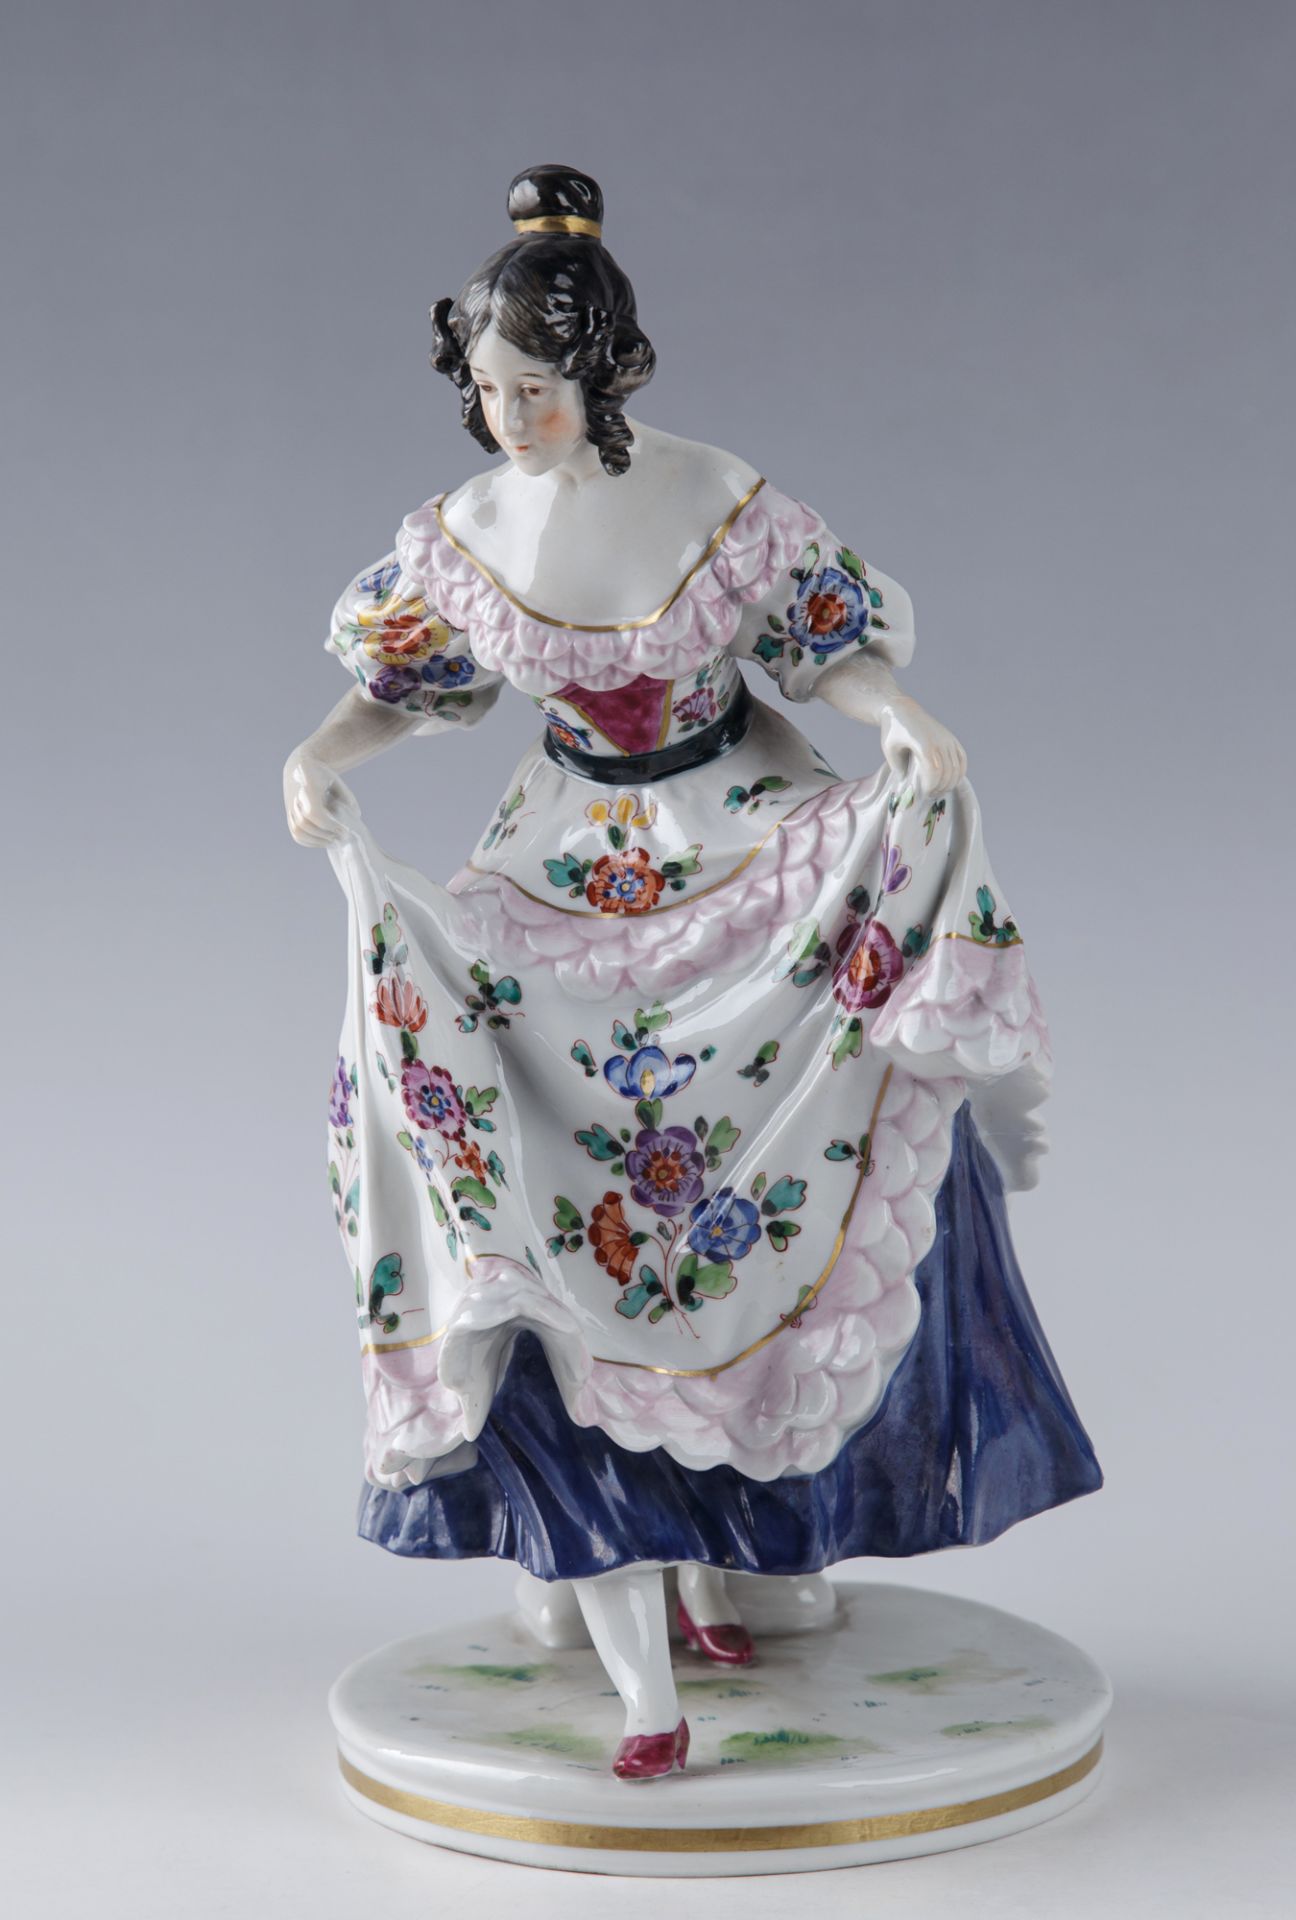 Ihr Kleid anhebende Tänzerin, Porzellanmanufaktur Ernst Bohne Söhne, Rudolstadt, 2. H. 19. Jh.